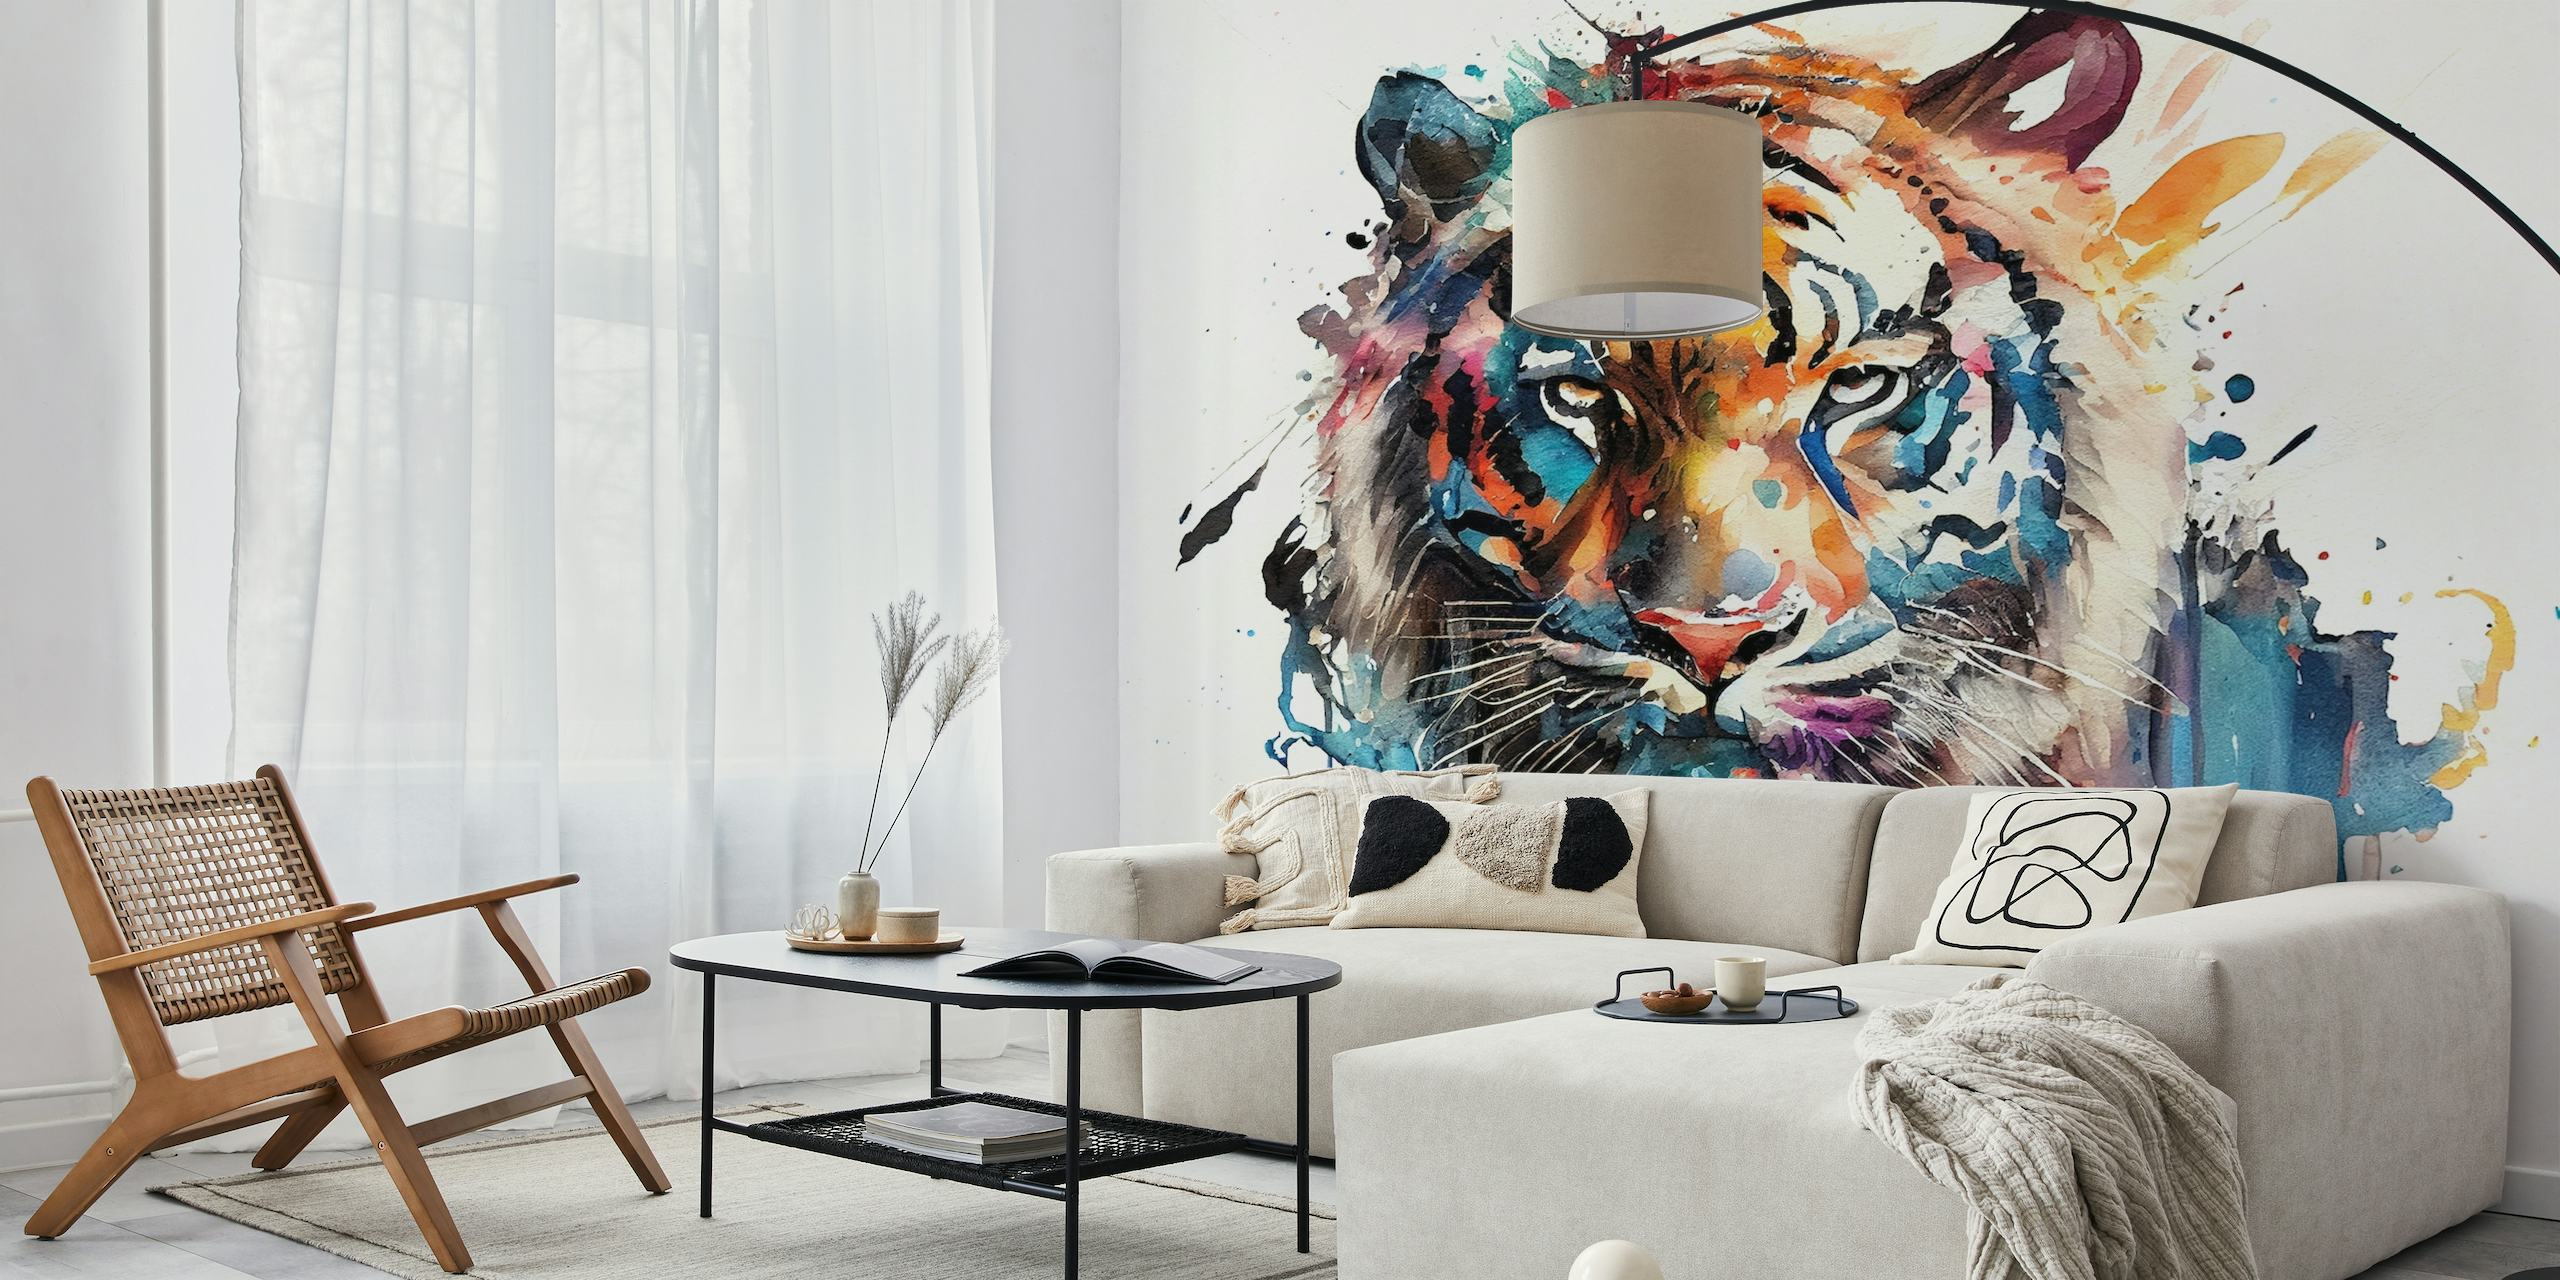 En akvarellmålning av en tiger med en blandning av livfulla färger mot en vit bakgrund, förvandlad till en väggmålning.